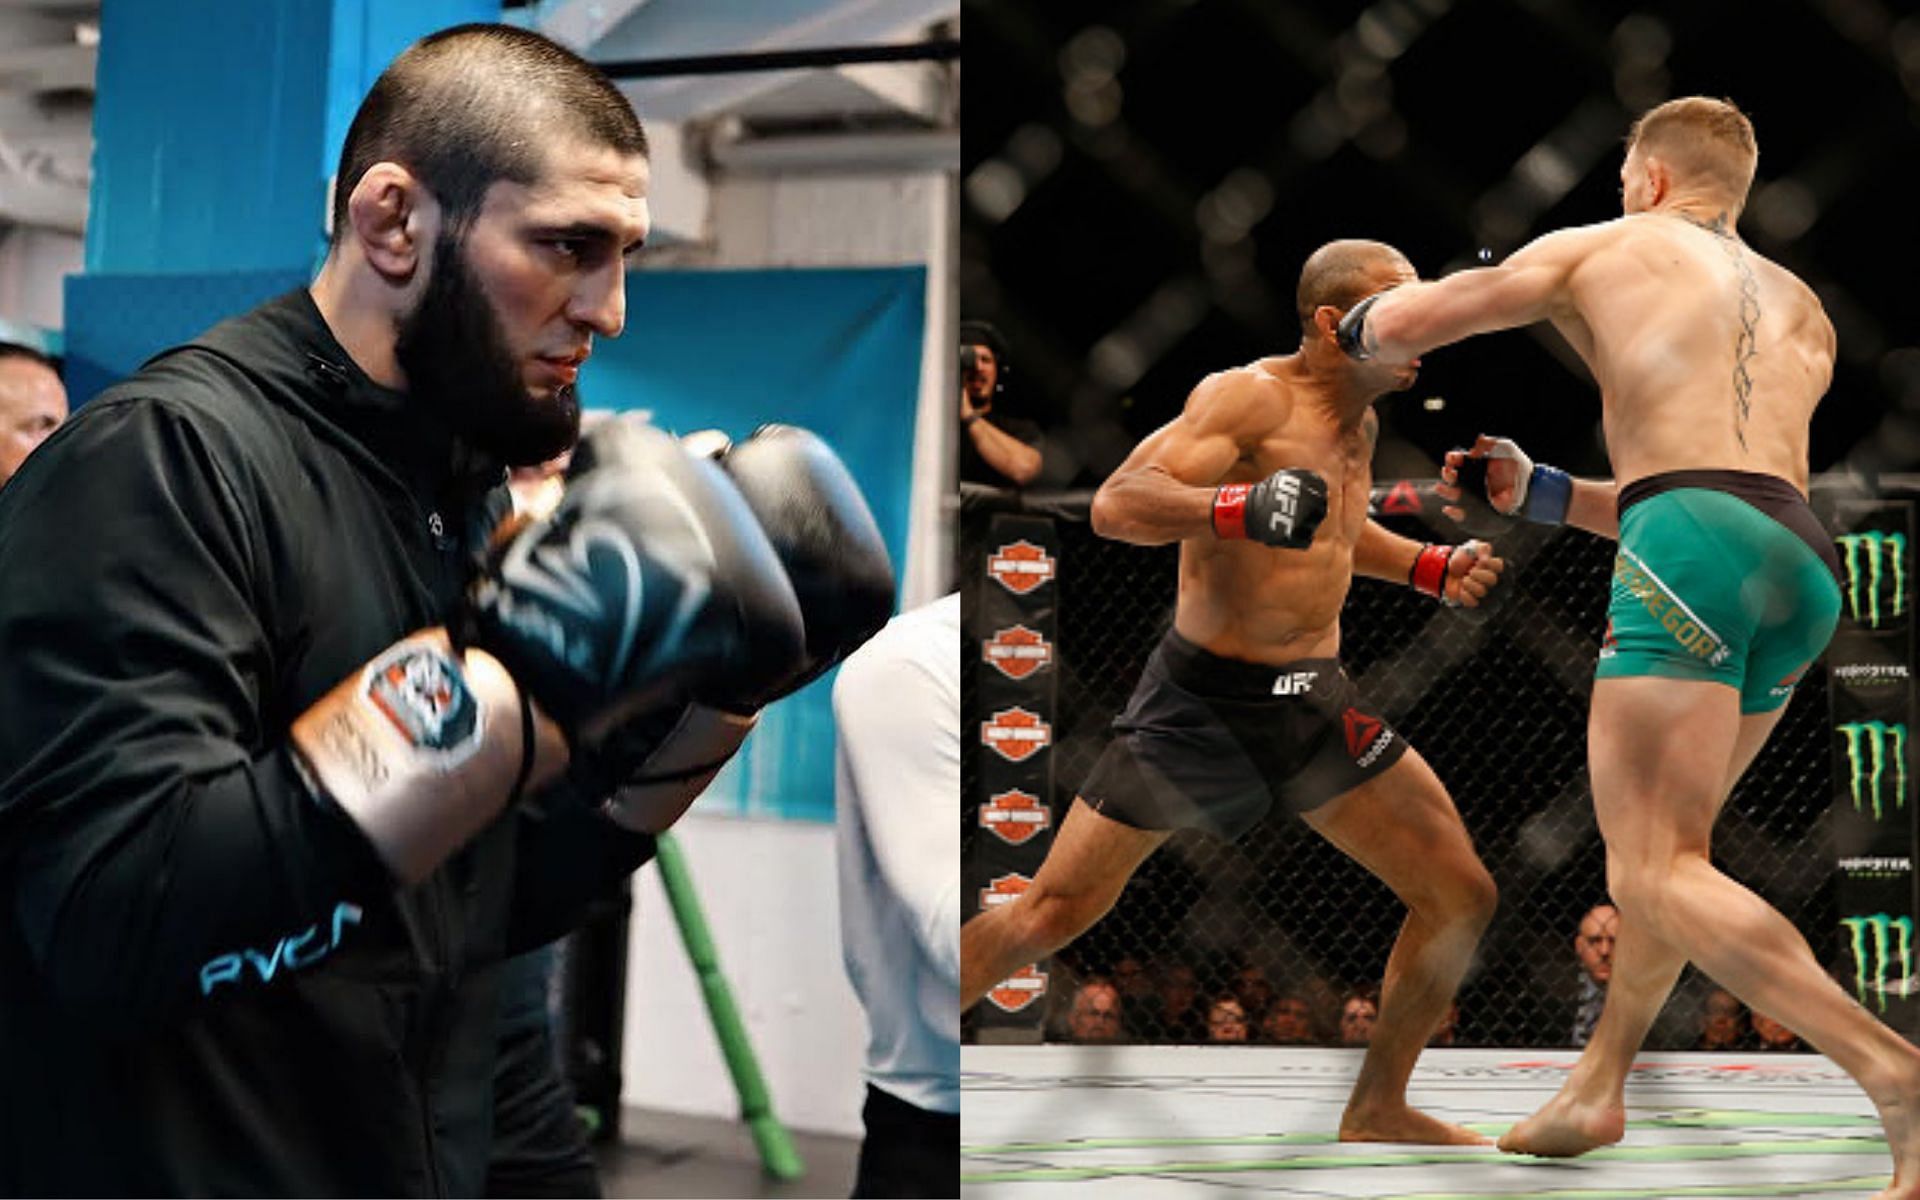 Khamzat Chimaev (left), Conor McGregor and Jose Aldo (right) [Image courtesy: UFC.com and @khamzat_chimaev via Instagram]